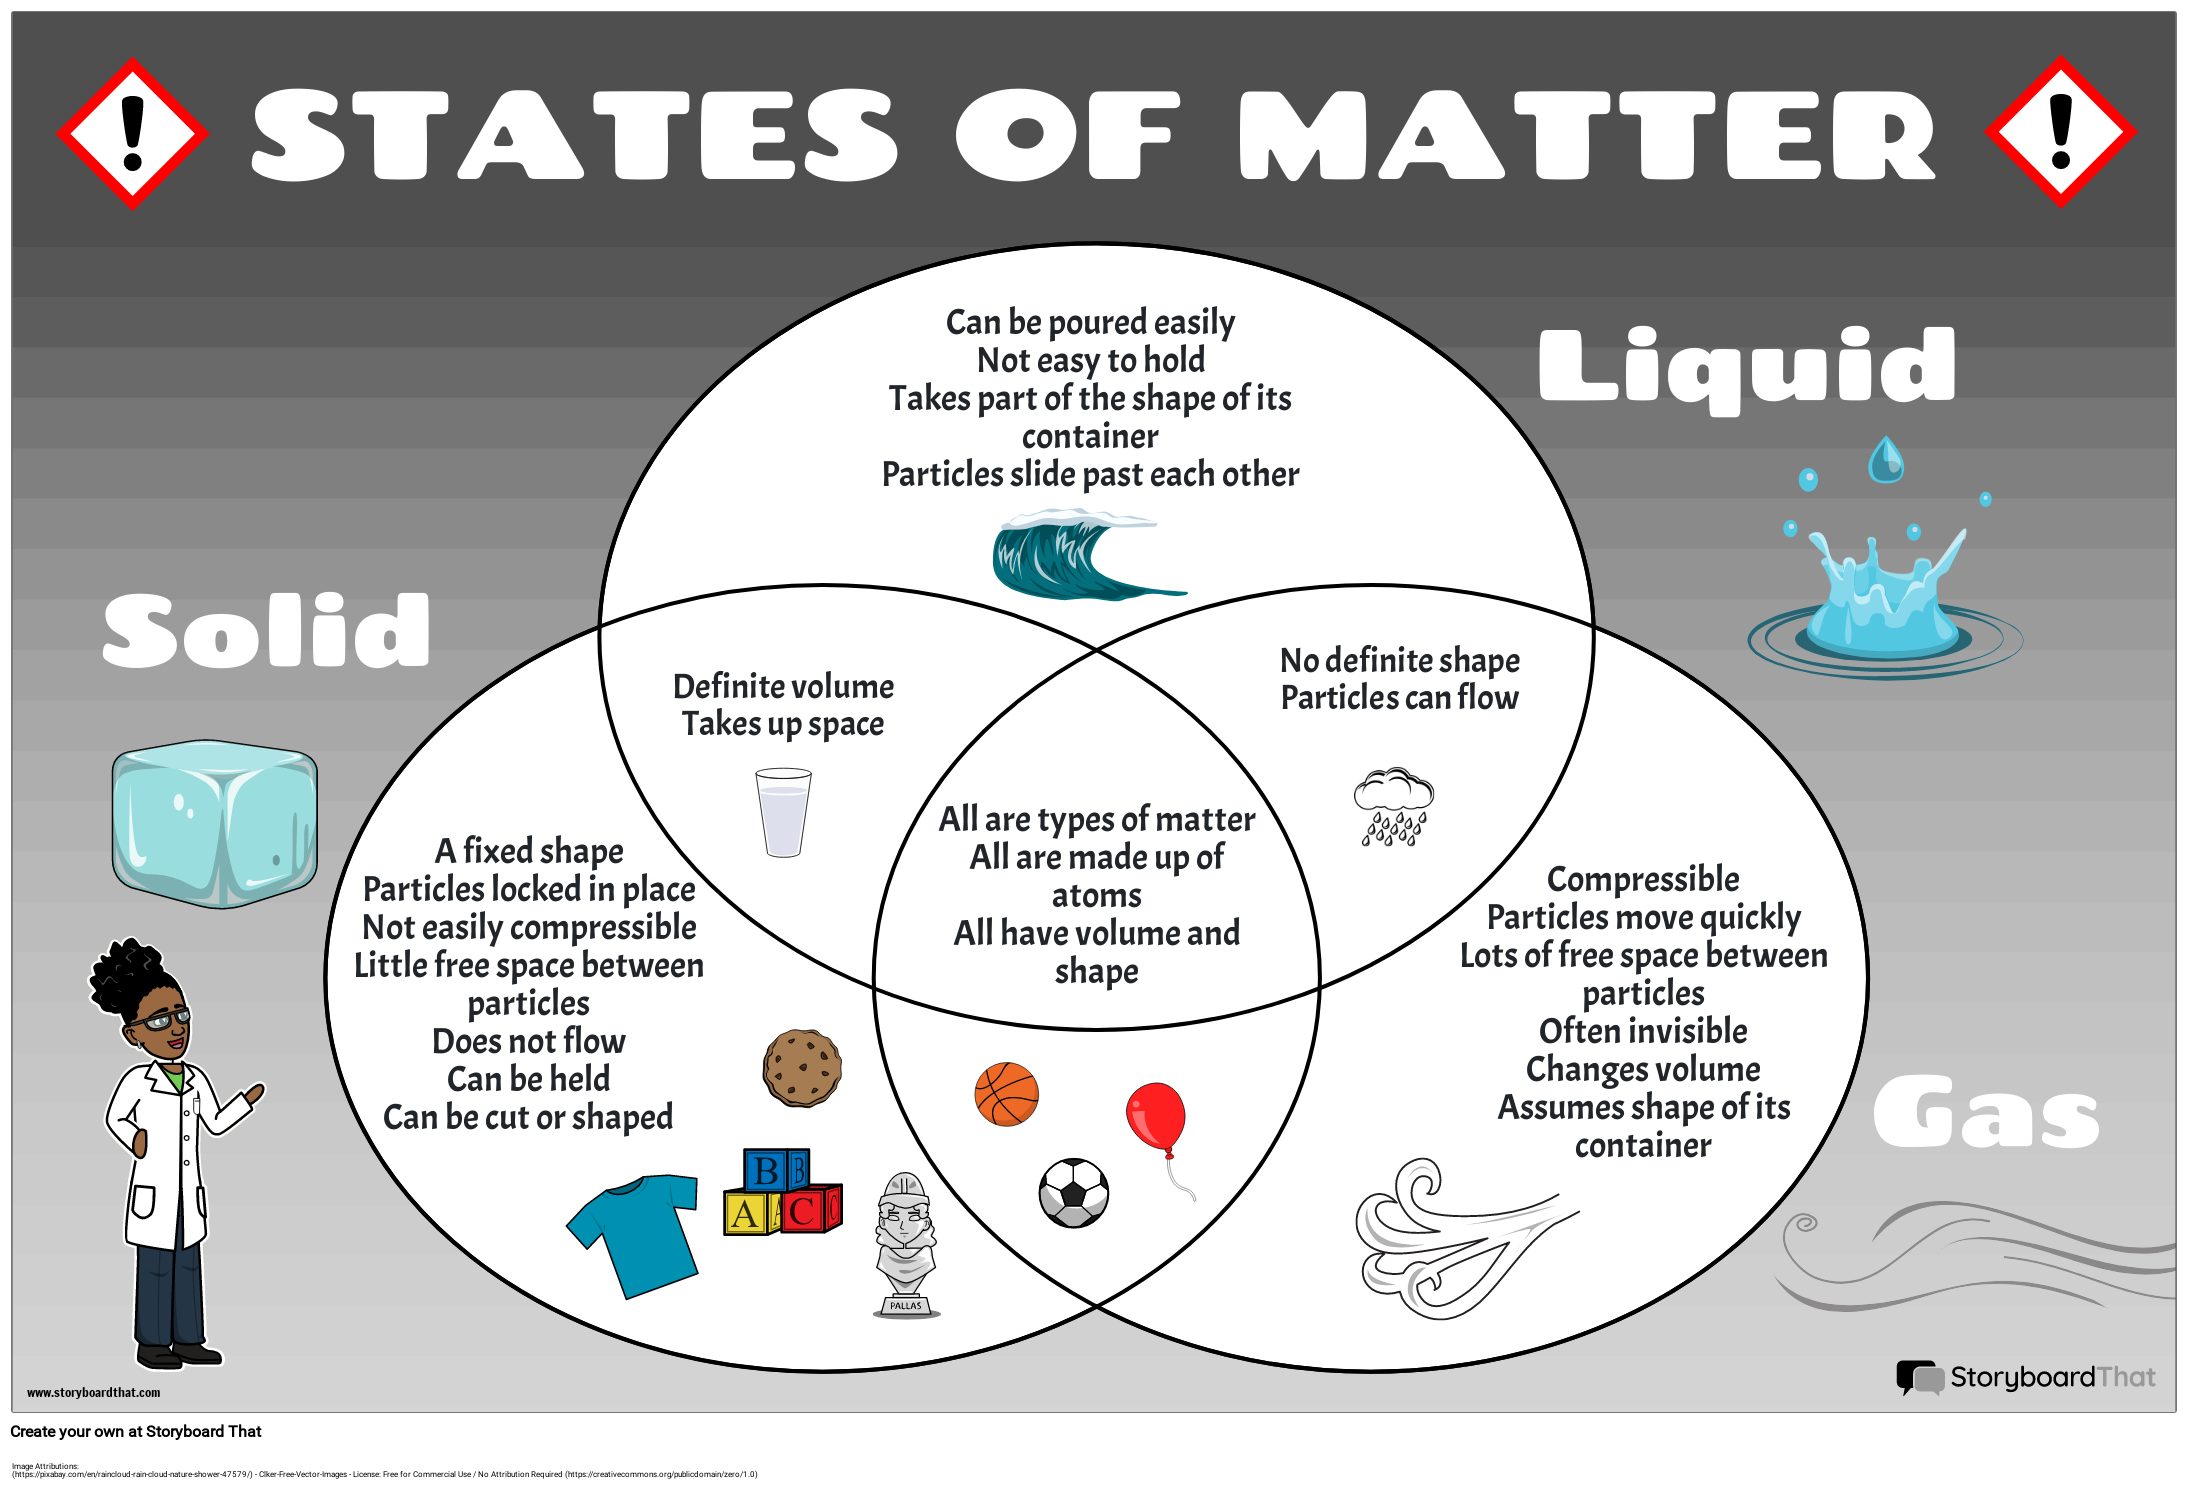 States of Matter Venn Diagram